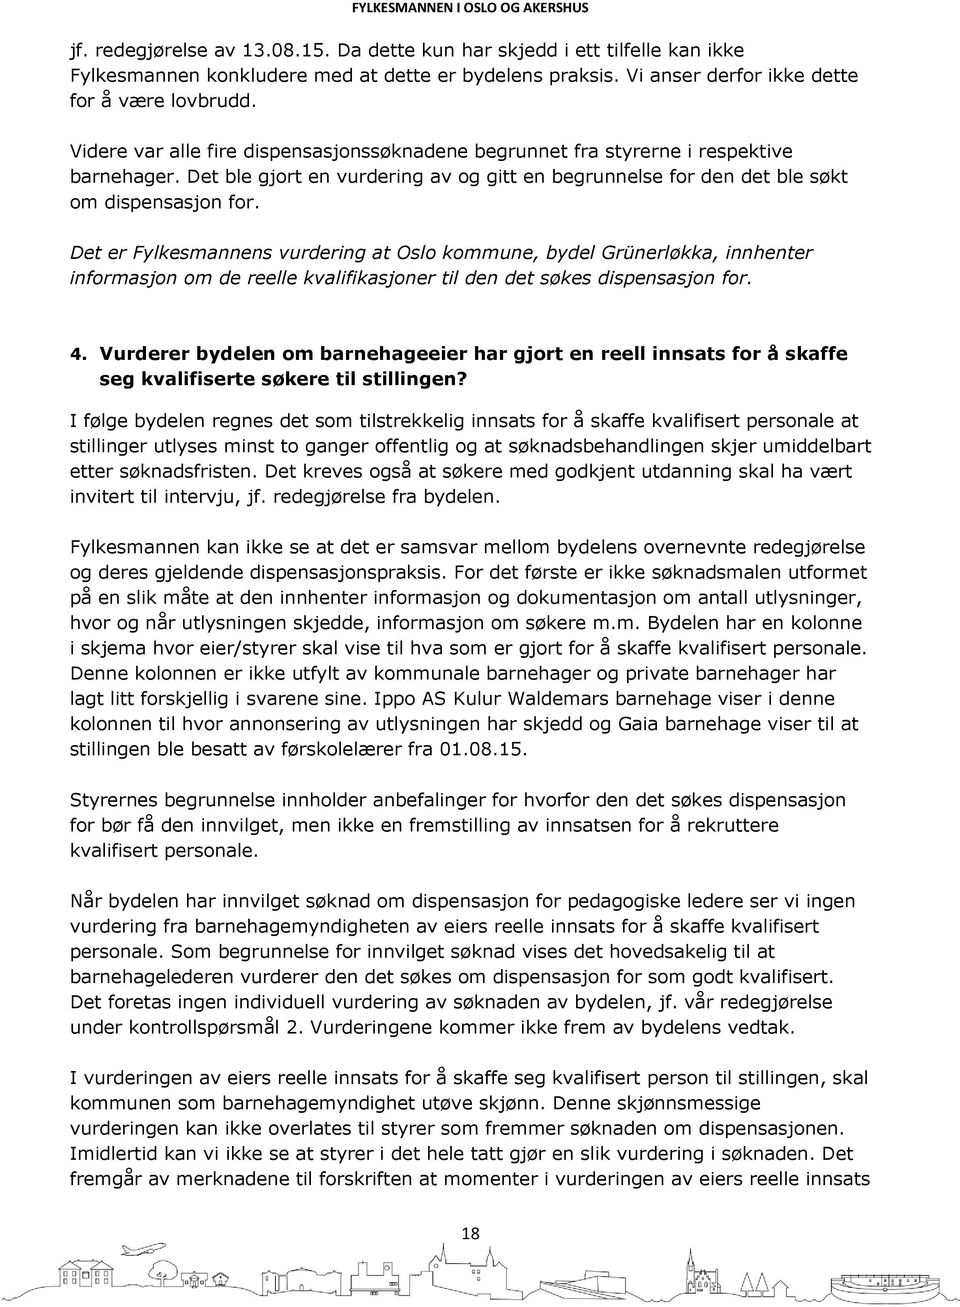 Det er Fylkesmannens vurdering at Oslo kommune, bydel Grünerløkka, innhenter informasjon om de reelle kvalifikasjoner til den det søkes dispensasjon for. 4.